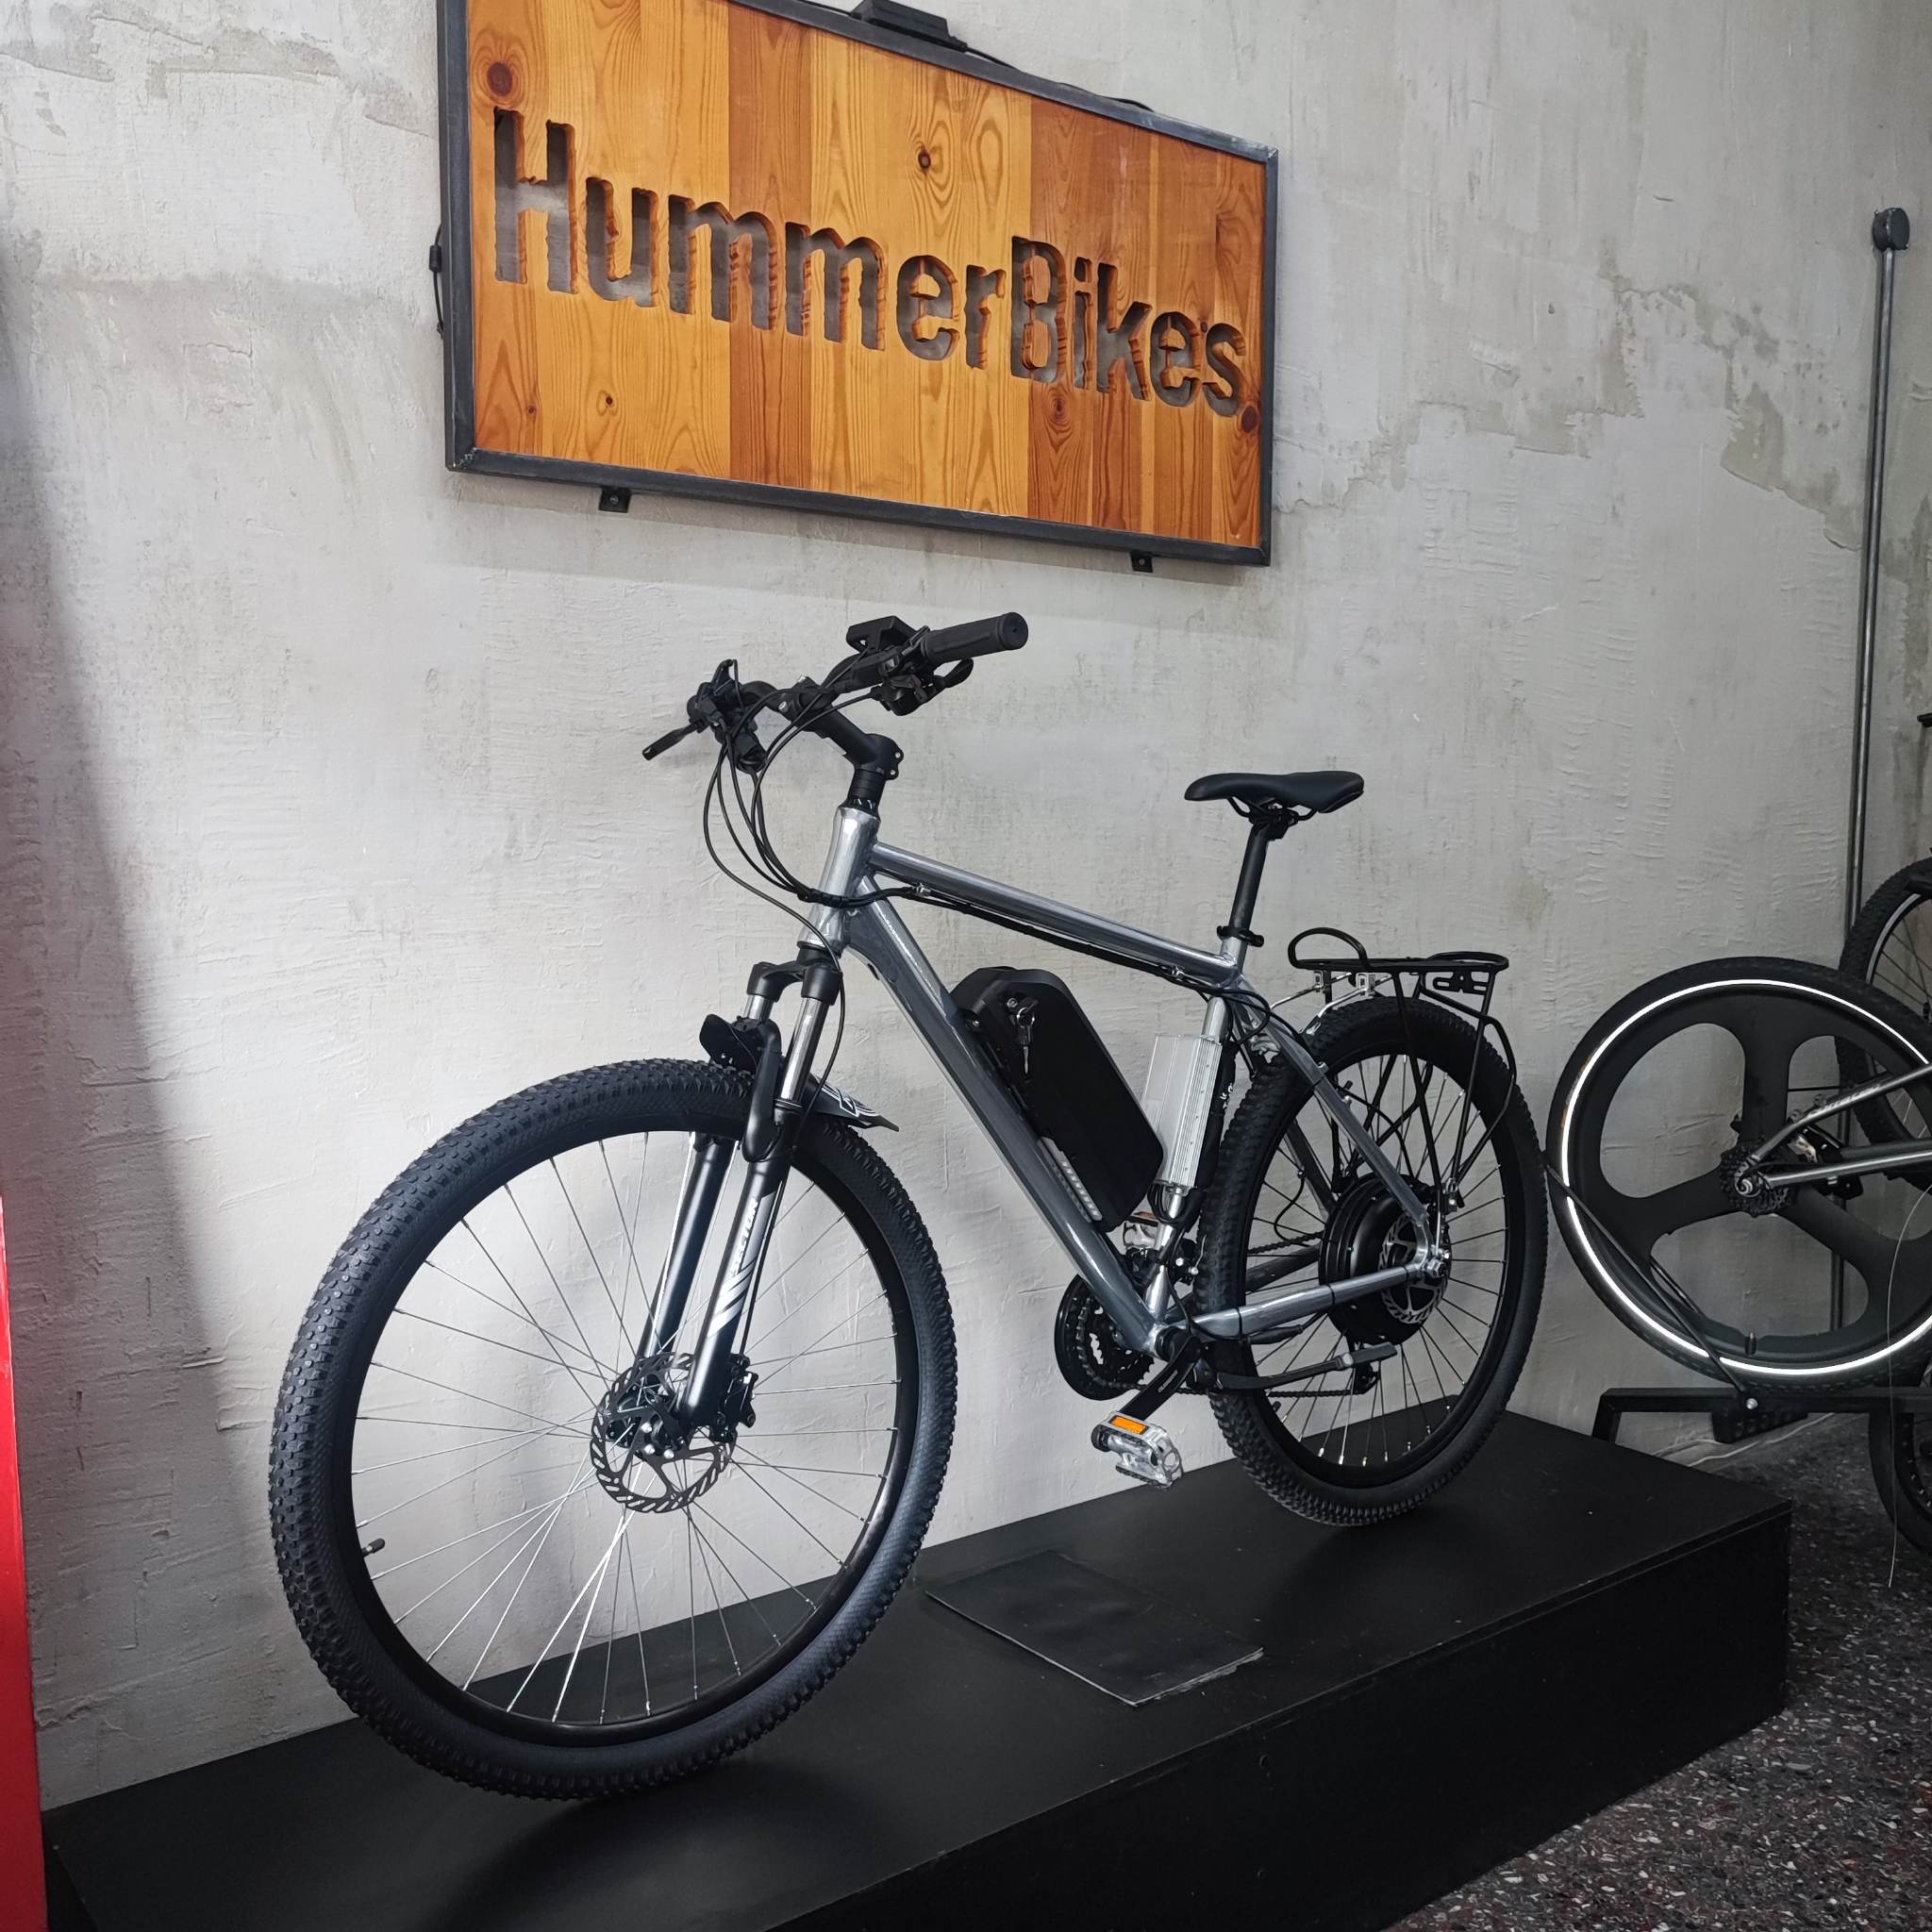 ηλεκτρικό ποδήλατο PHANTOM 2000Watt 52V Ebike υψηλής ισχύος Hummer Bikes